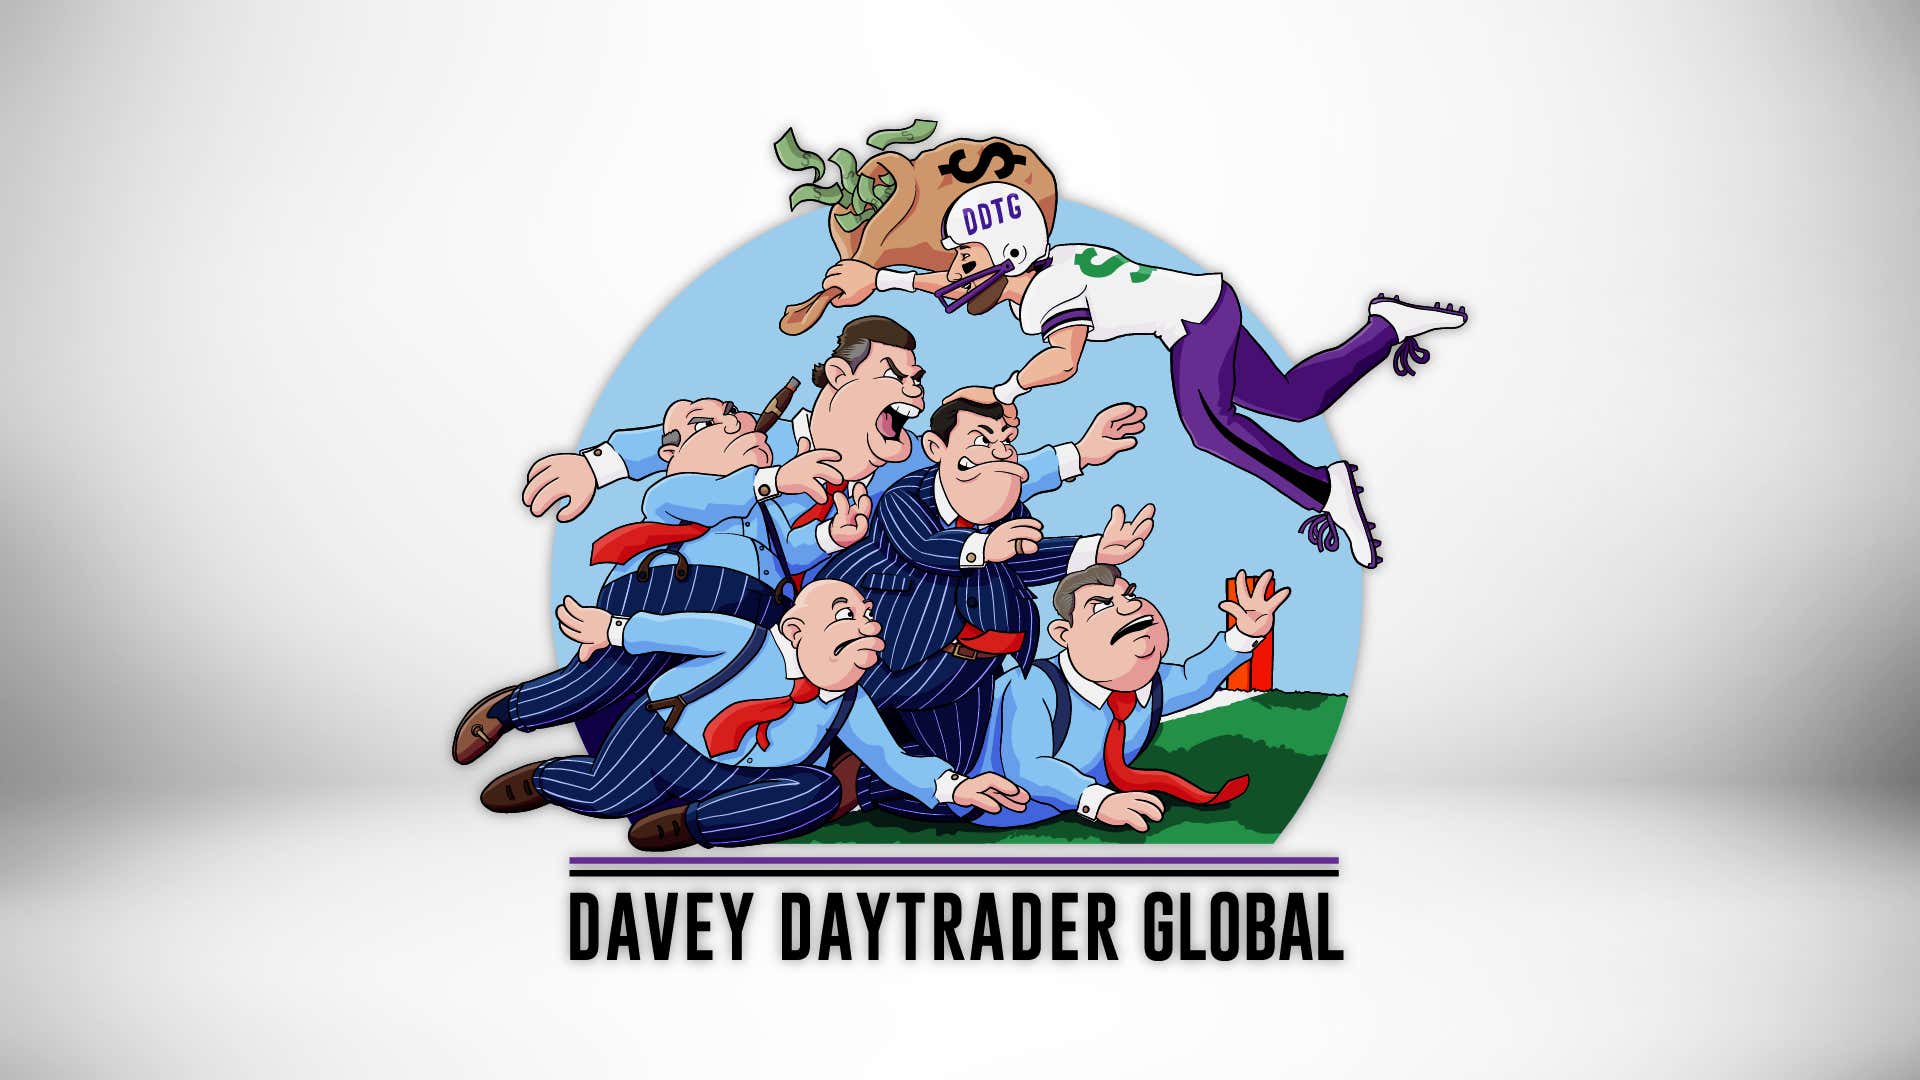 Davey Day Trader – August 4, 2020